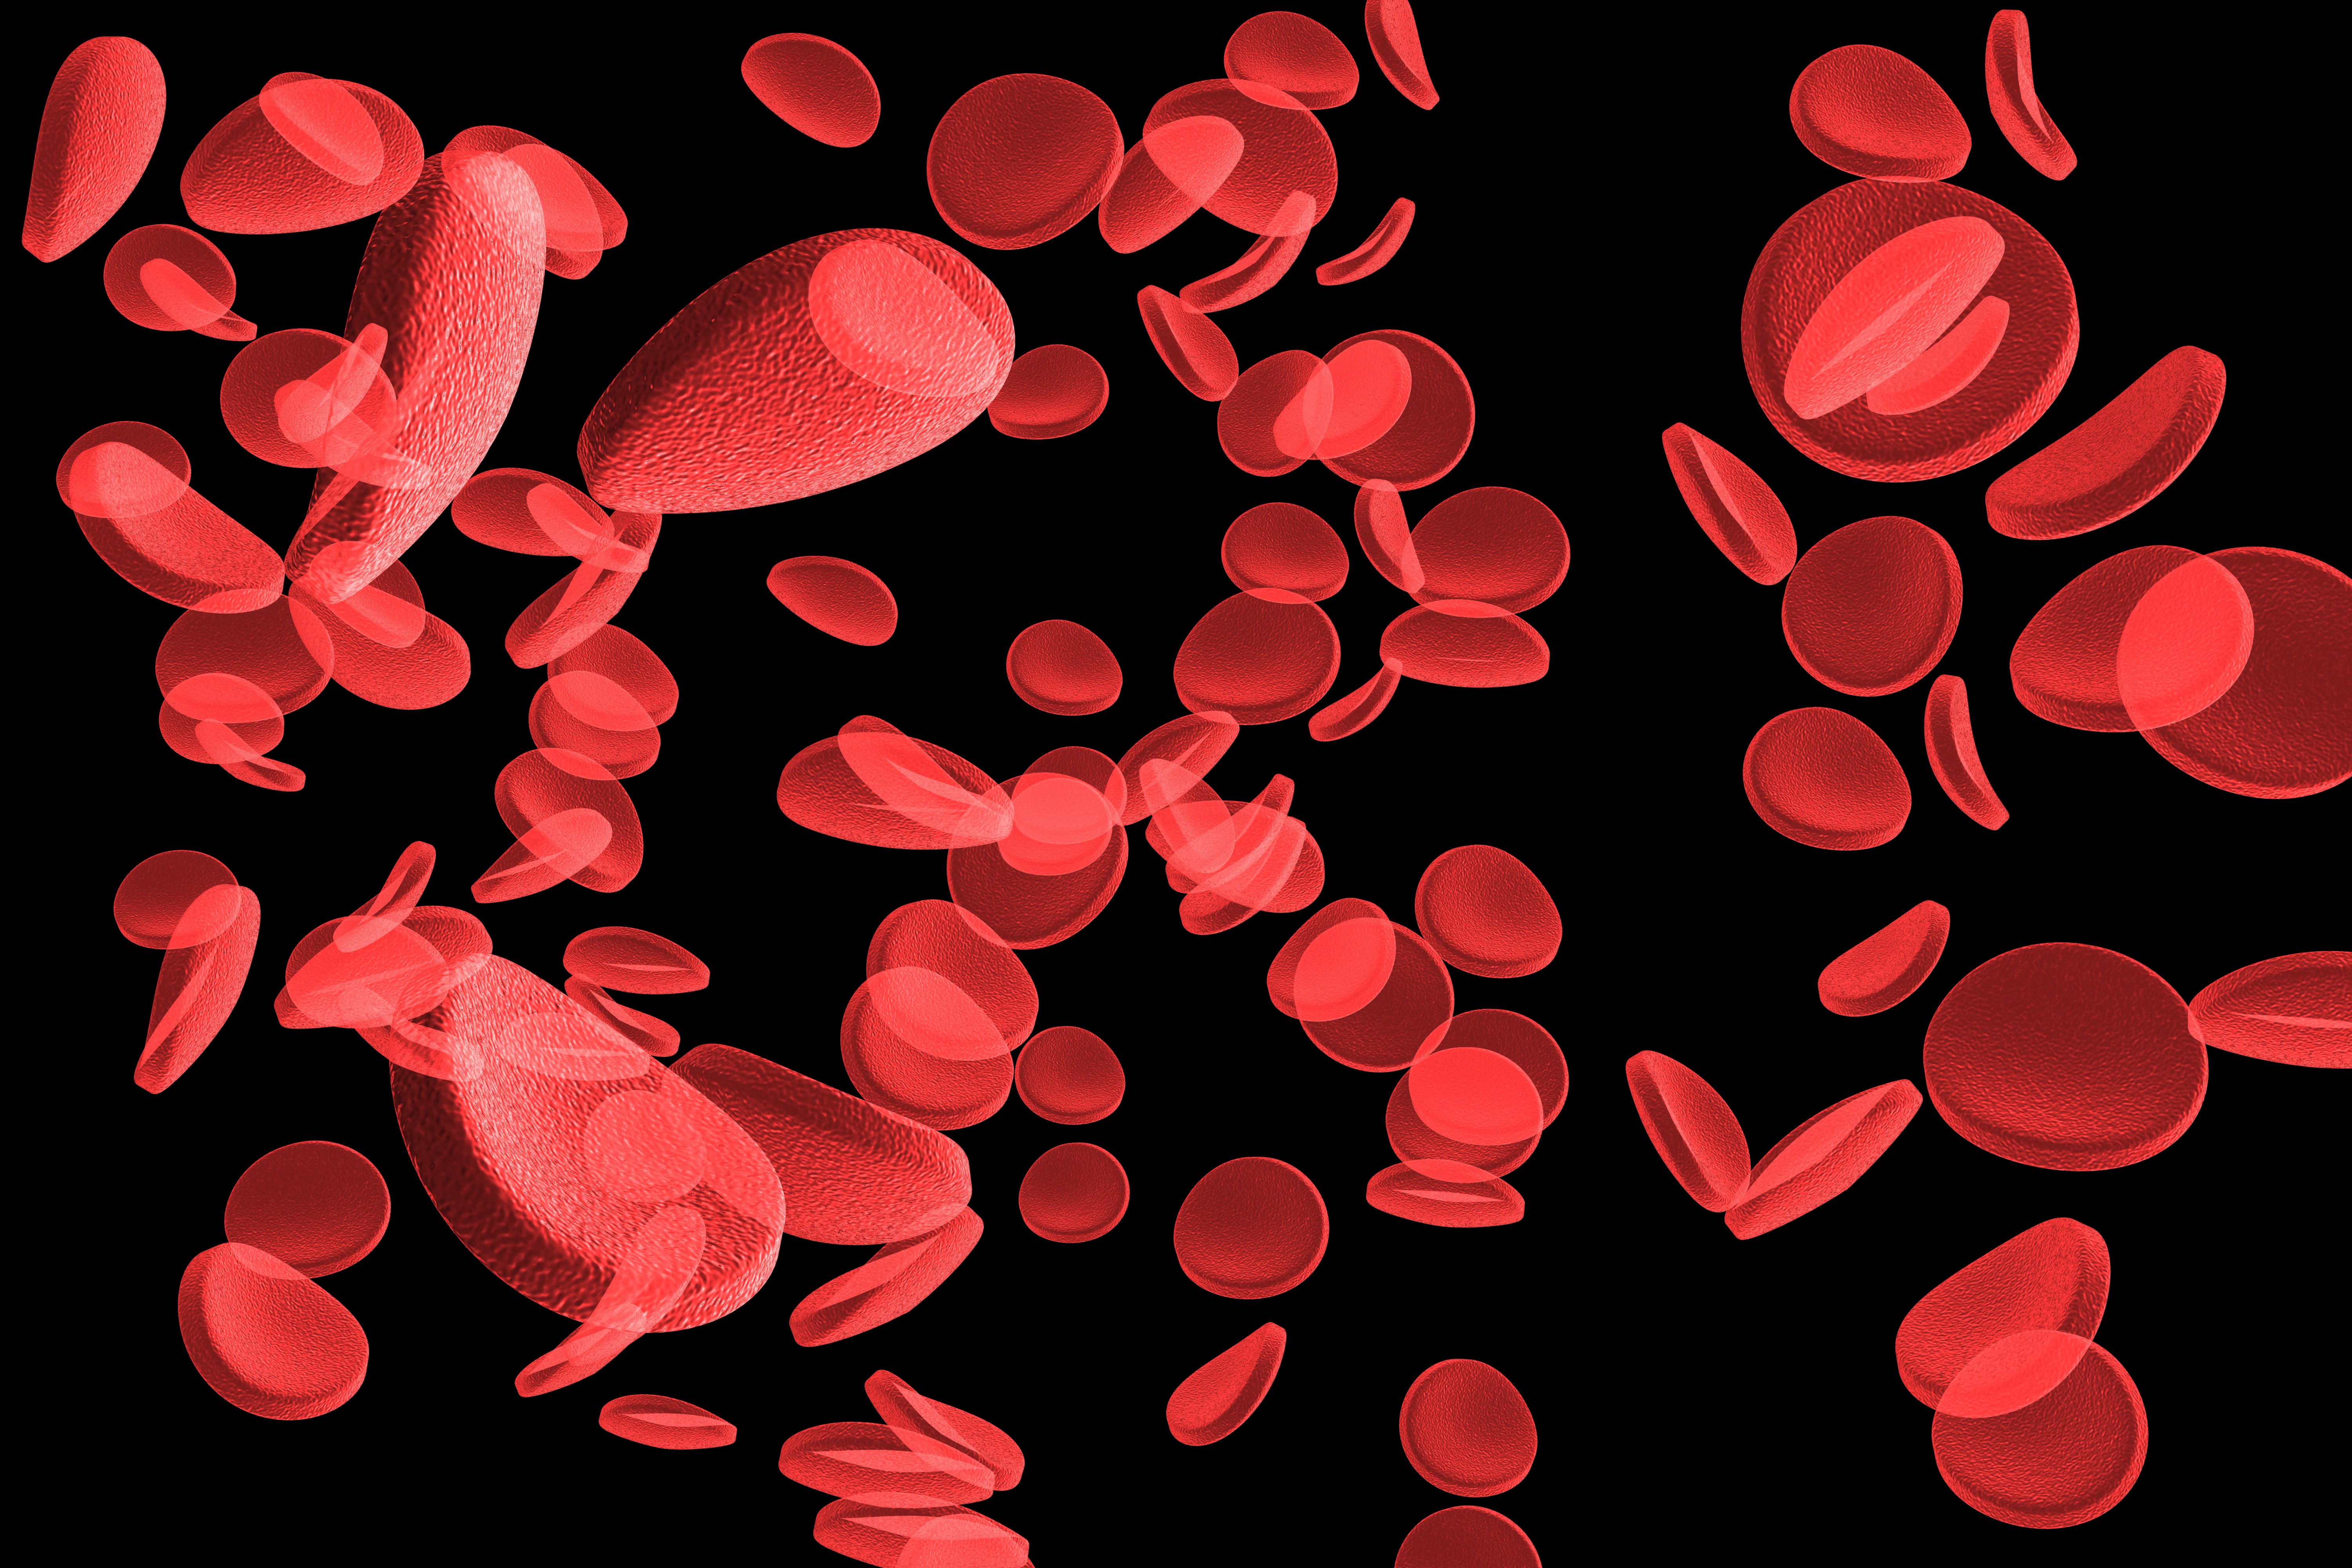 Red blood cells 3d, Dreamstime